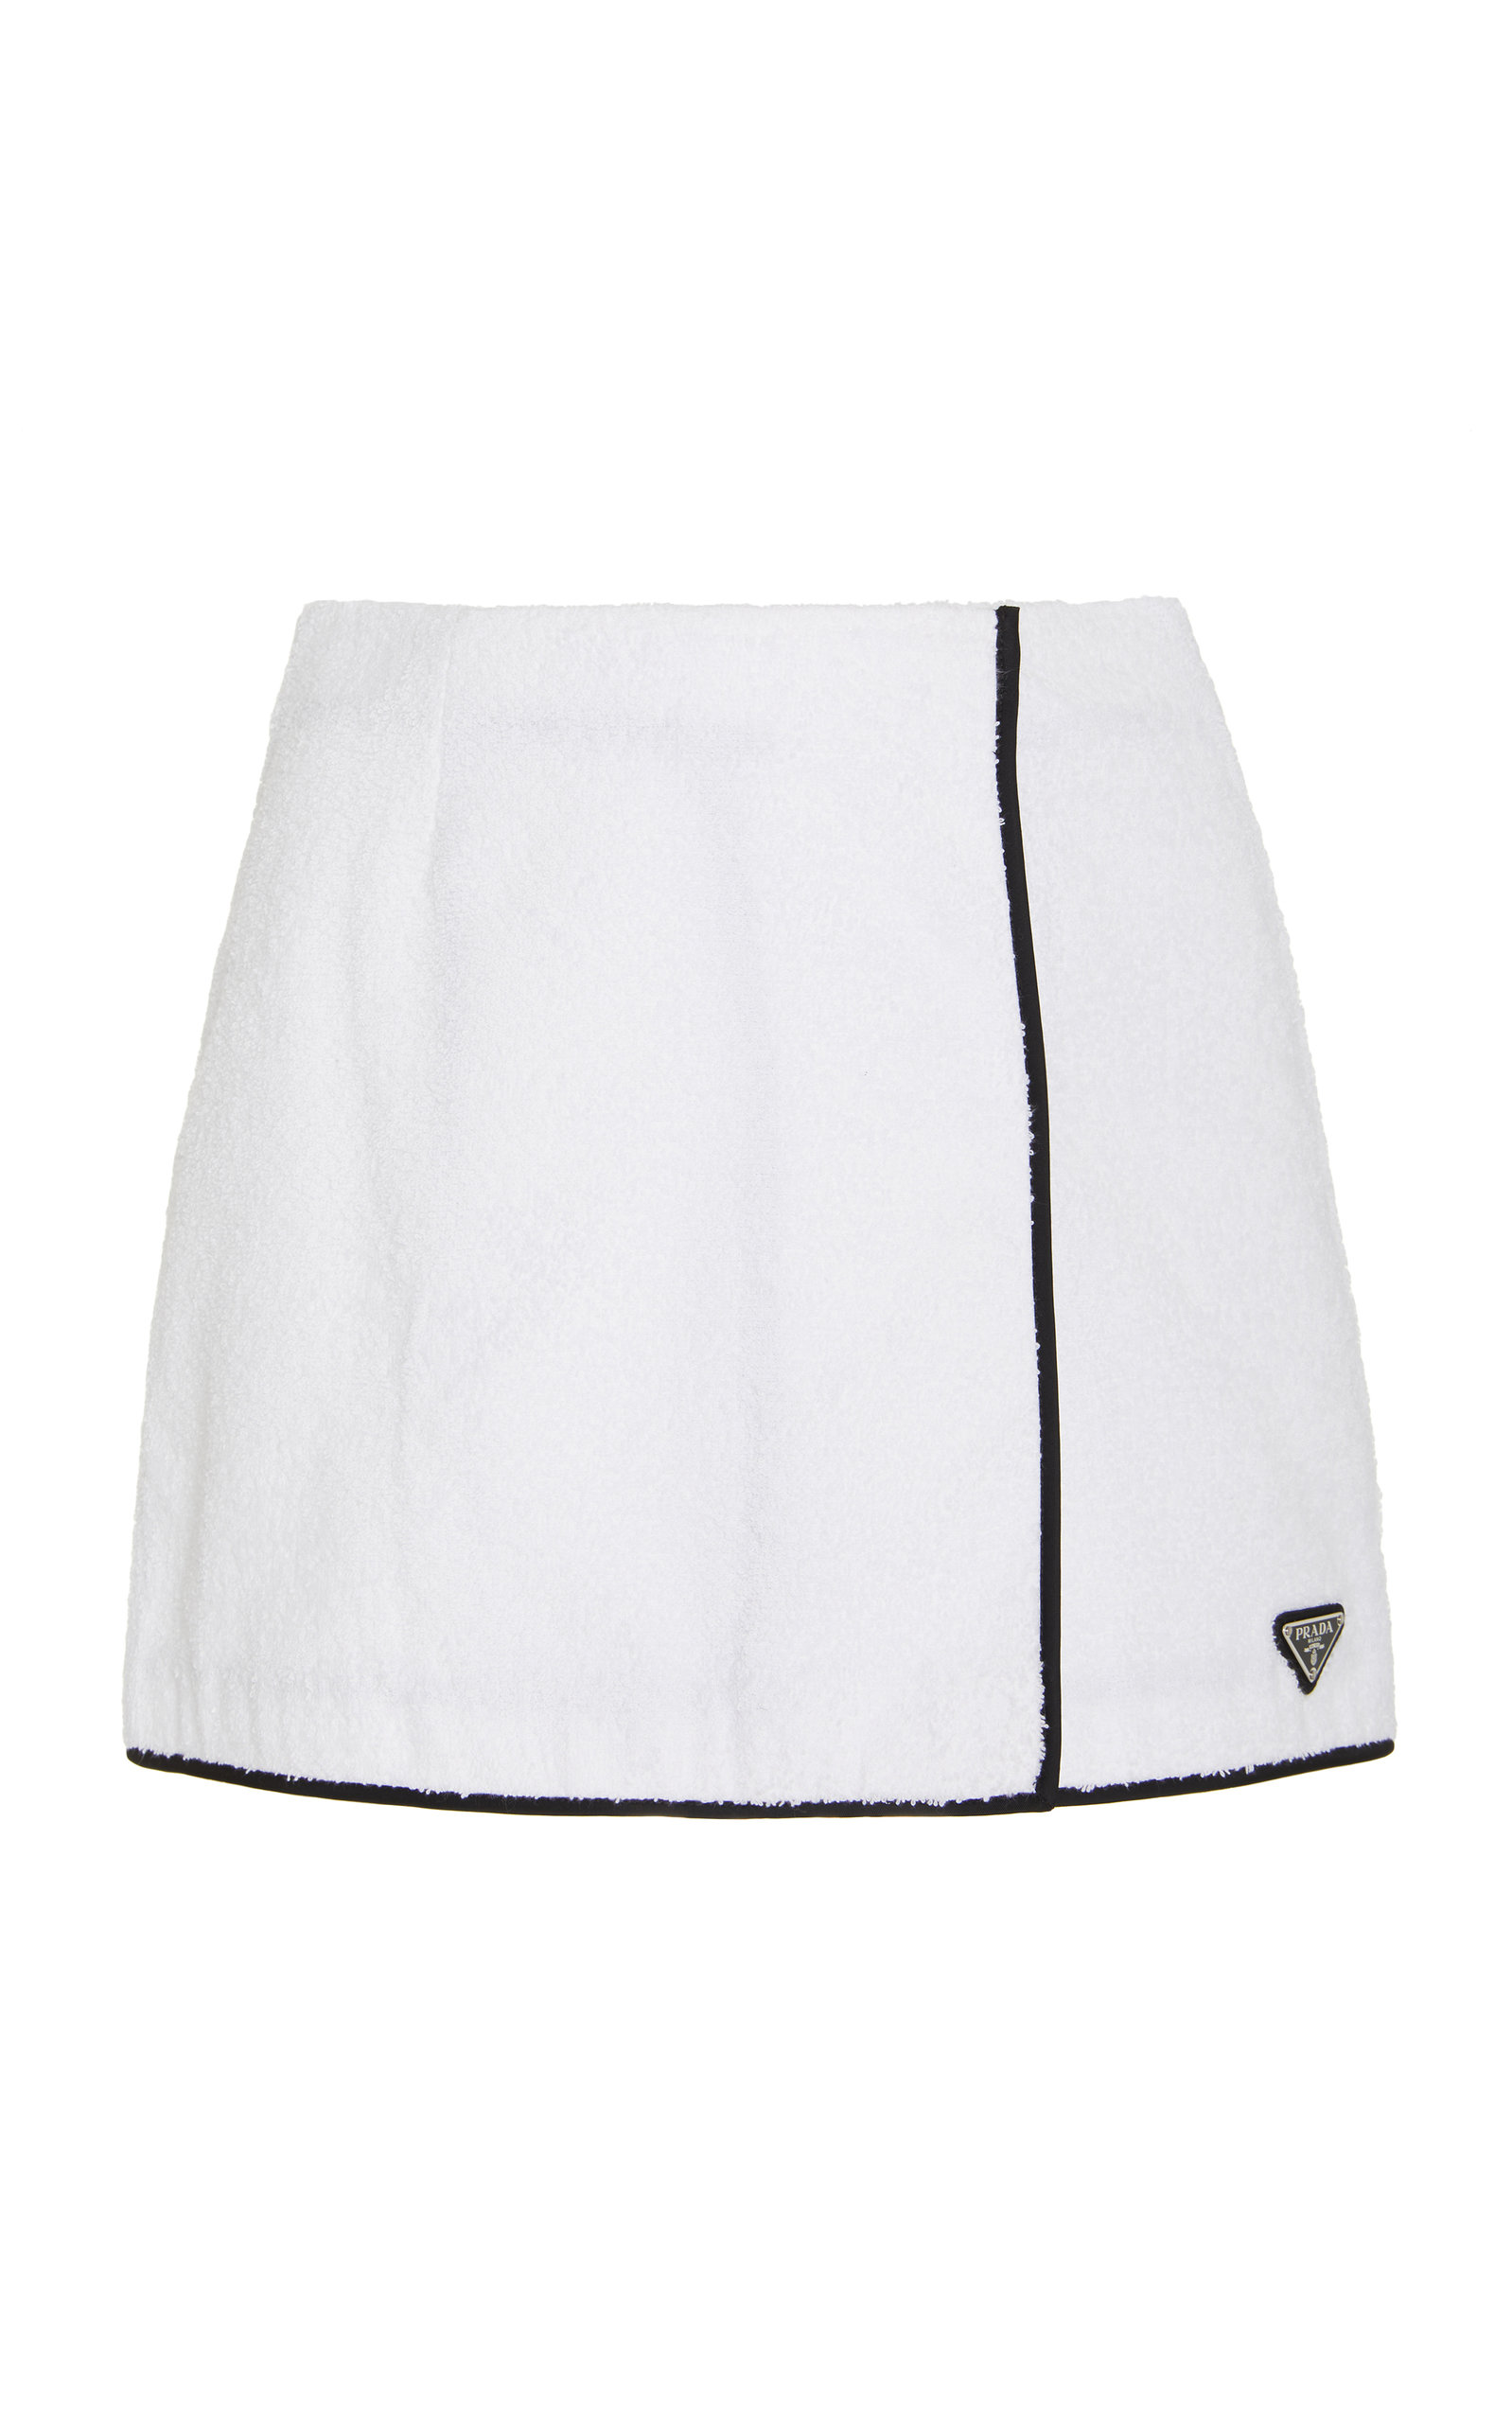 Prada - Women's Cotton Terrycloth Mini Skirt - White - IT 42 - Moda Operandi